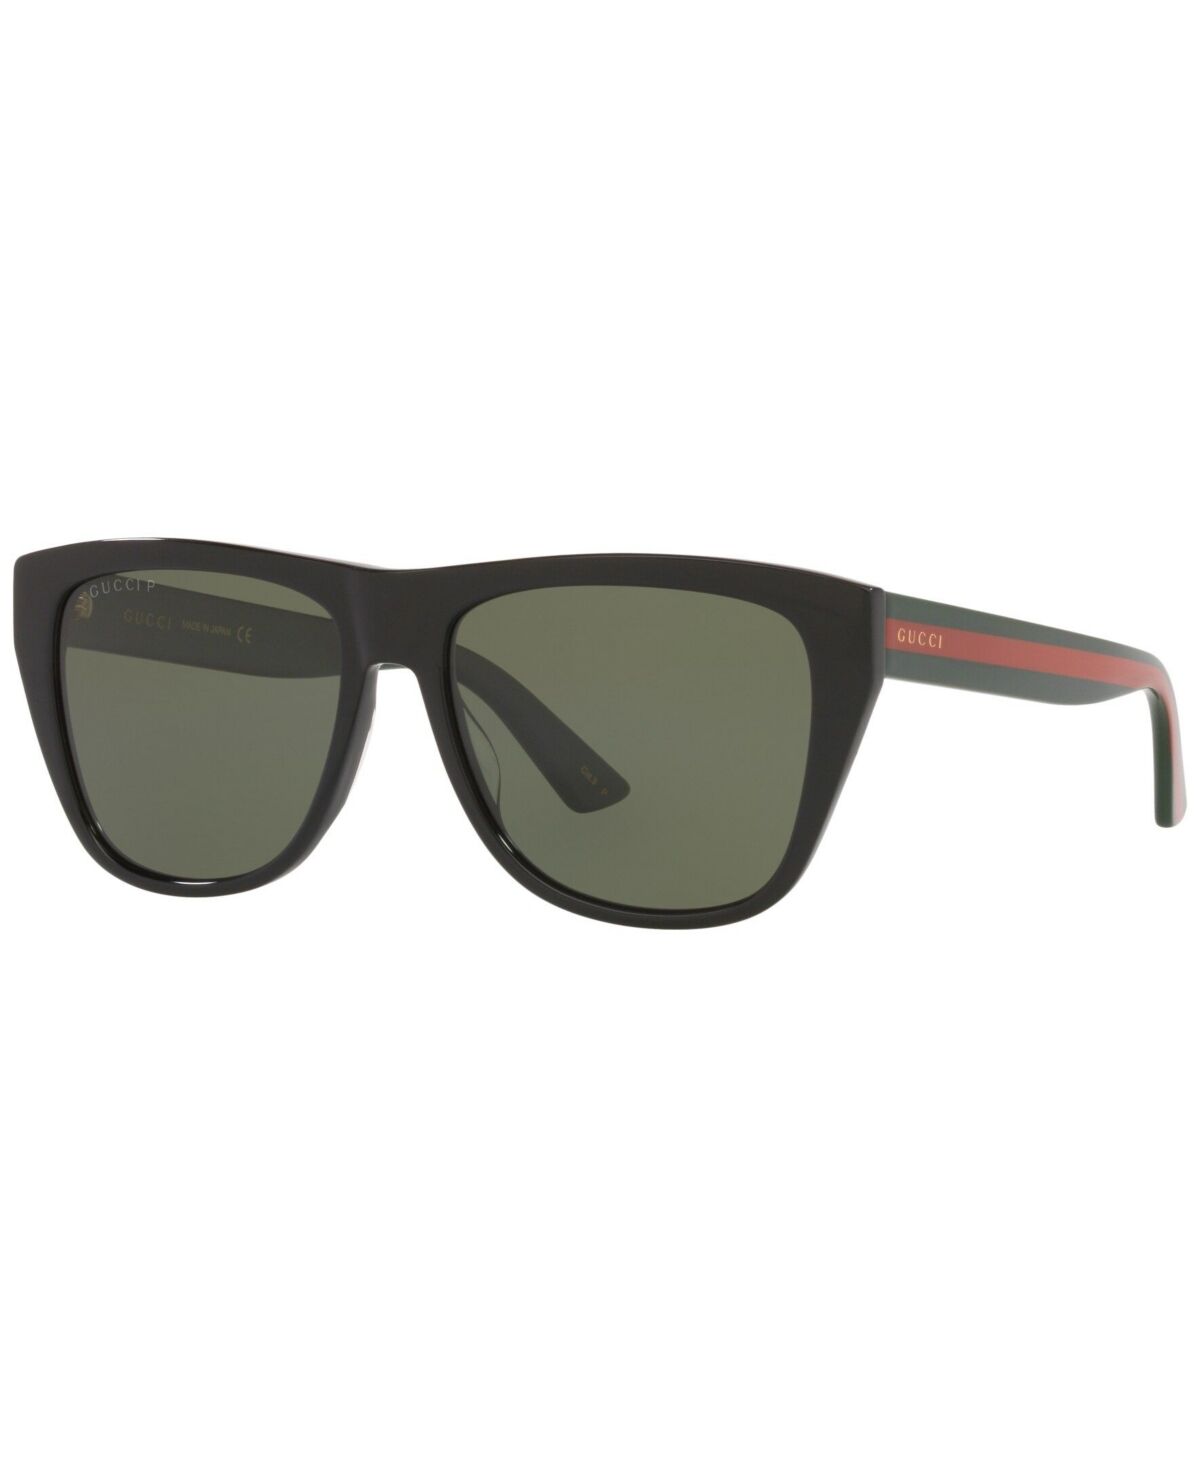 Gucci Men's Polarized Sunglasses, GC001617 57 - Black